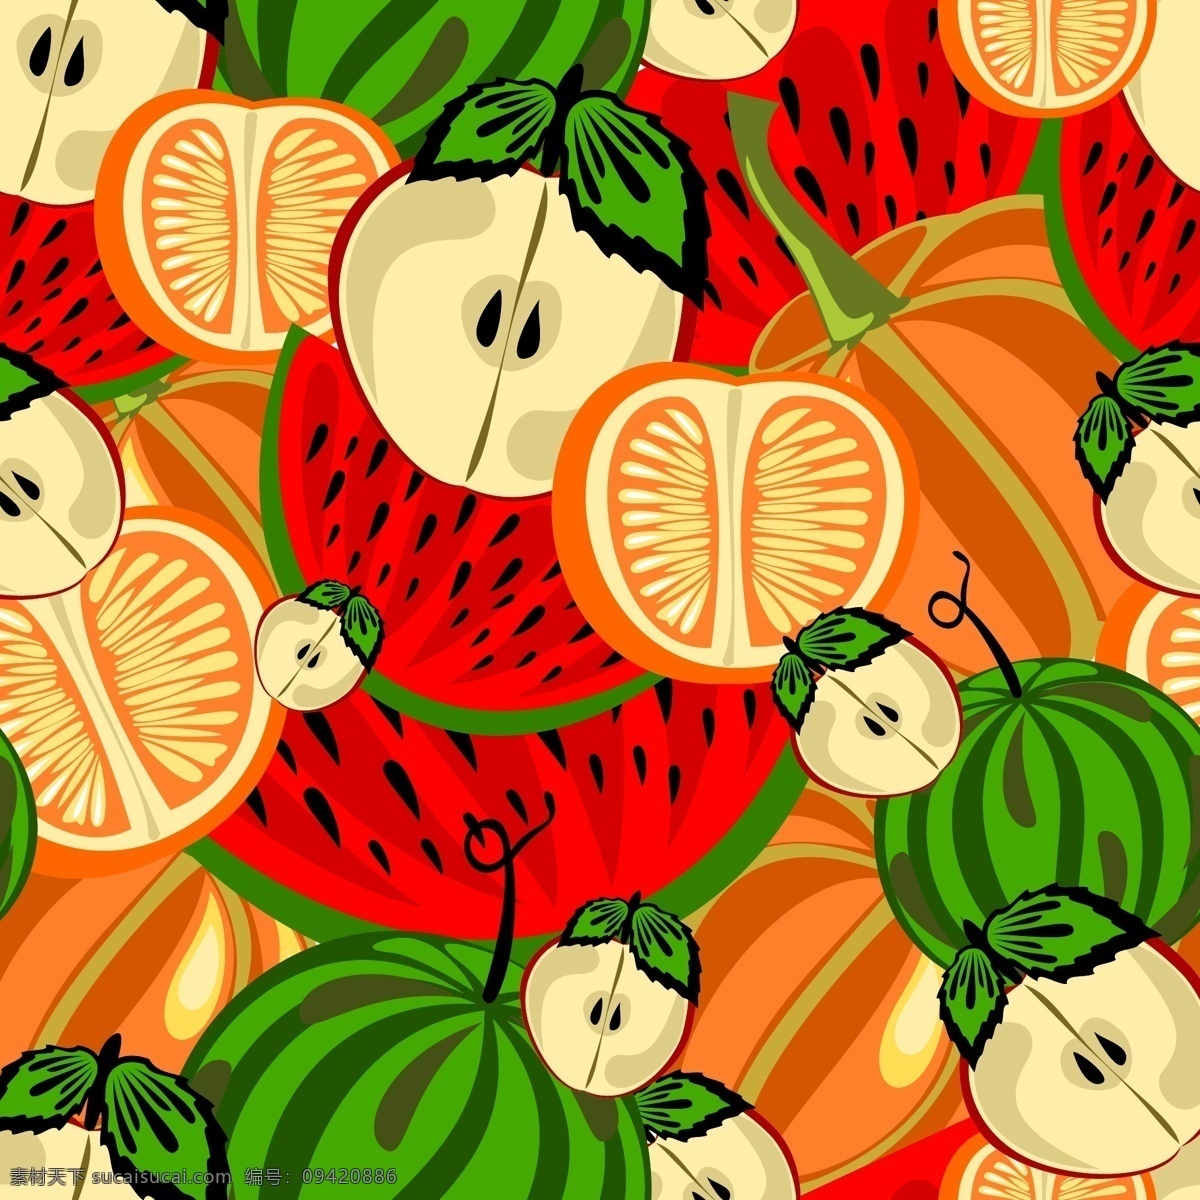 矢量 缤纷 可爱 水果 背景 菠萝 花纹 卡通 梨子 柠檬 苹果 樱桃 矢量图 花纹花边